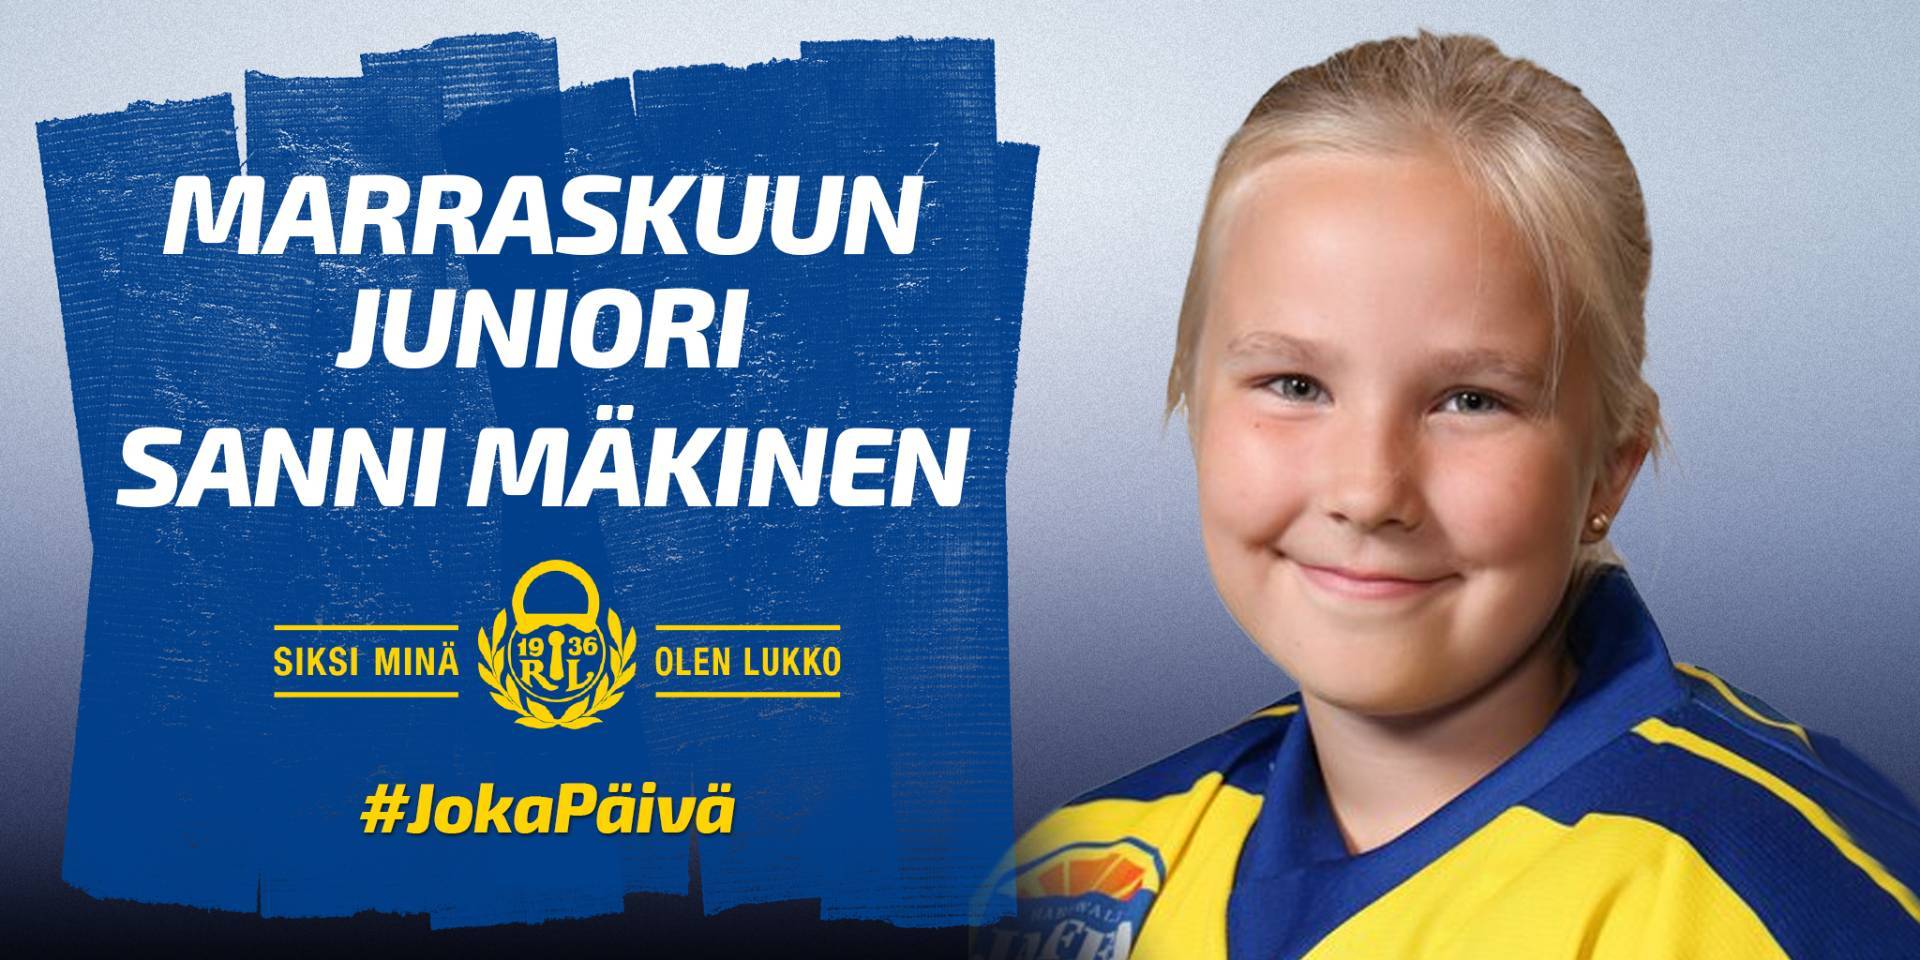 Ringeten F-tyttöjen Sanni Mäkinen valittiin Lukon marraskuun junioriksi